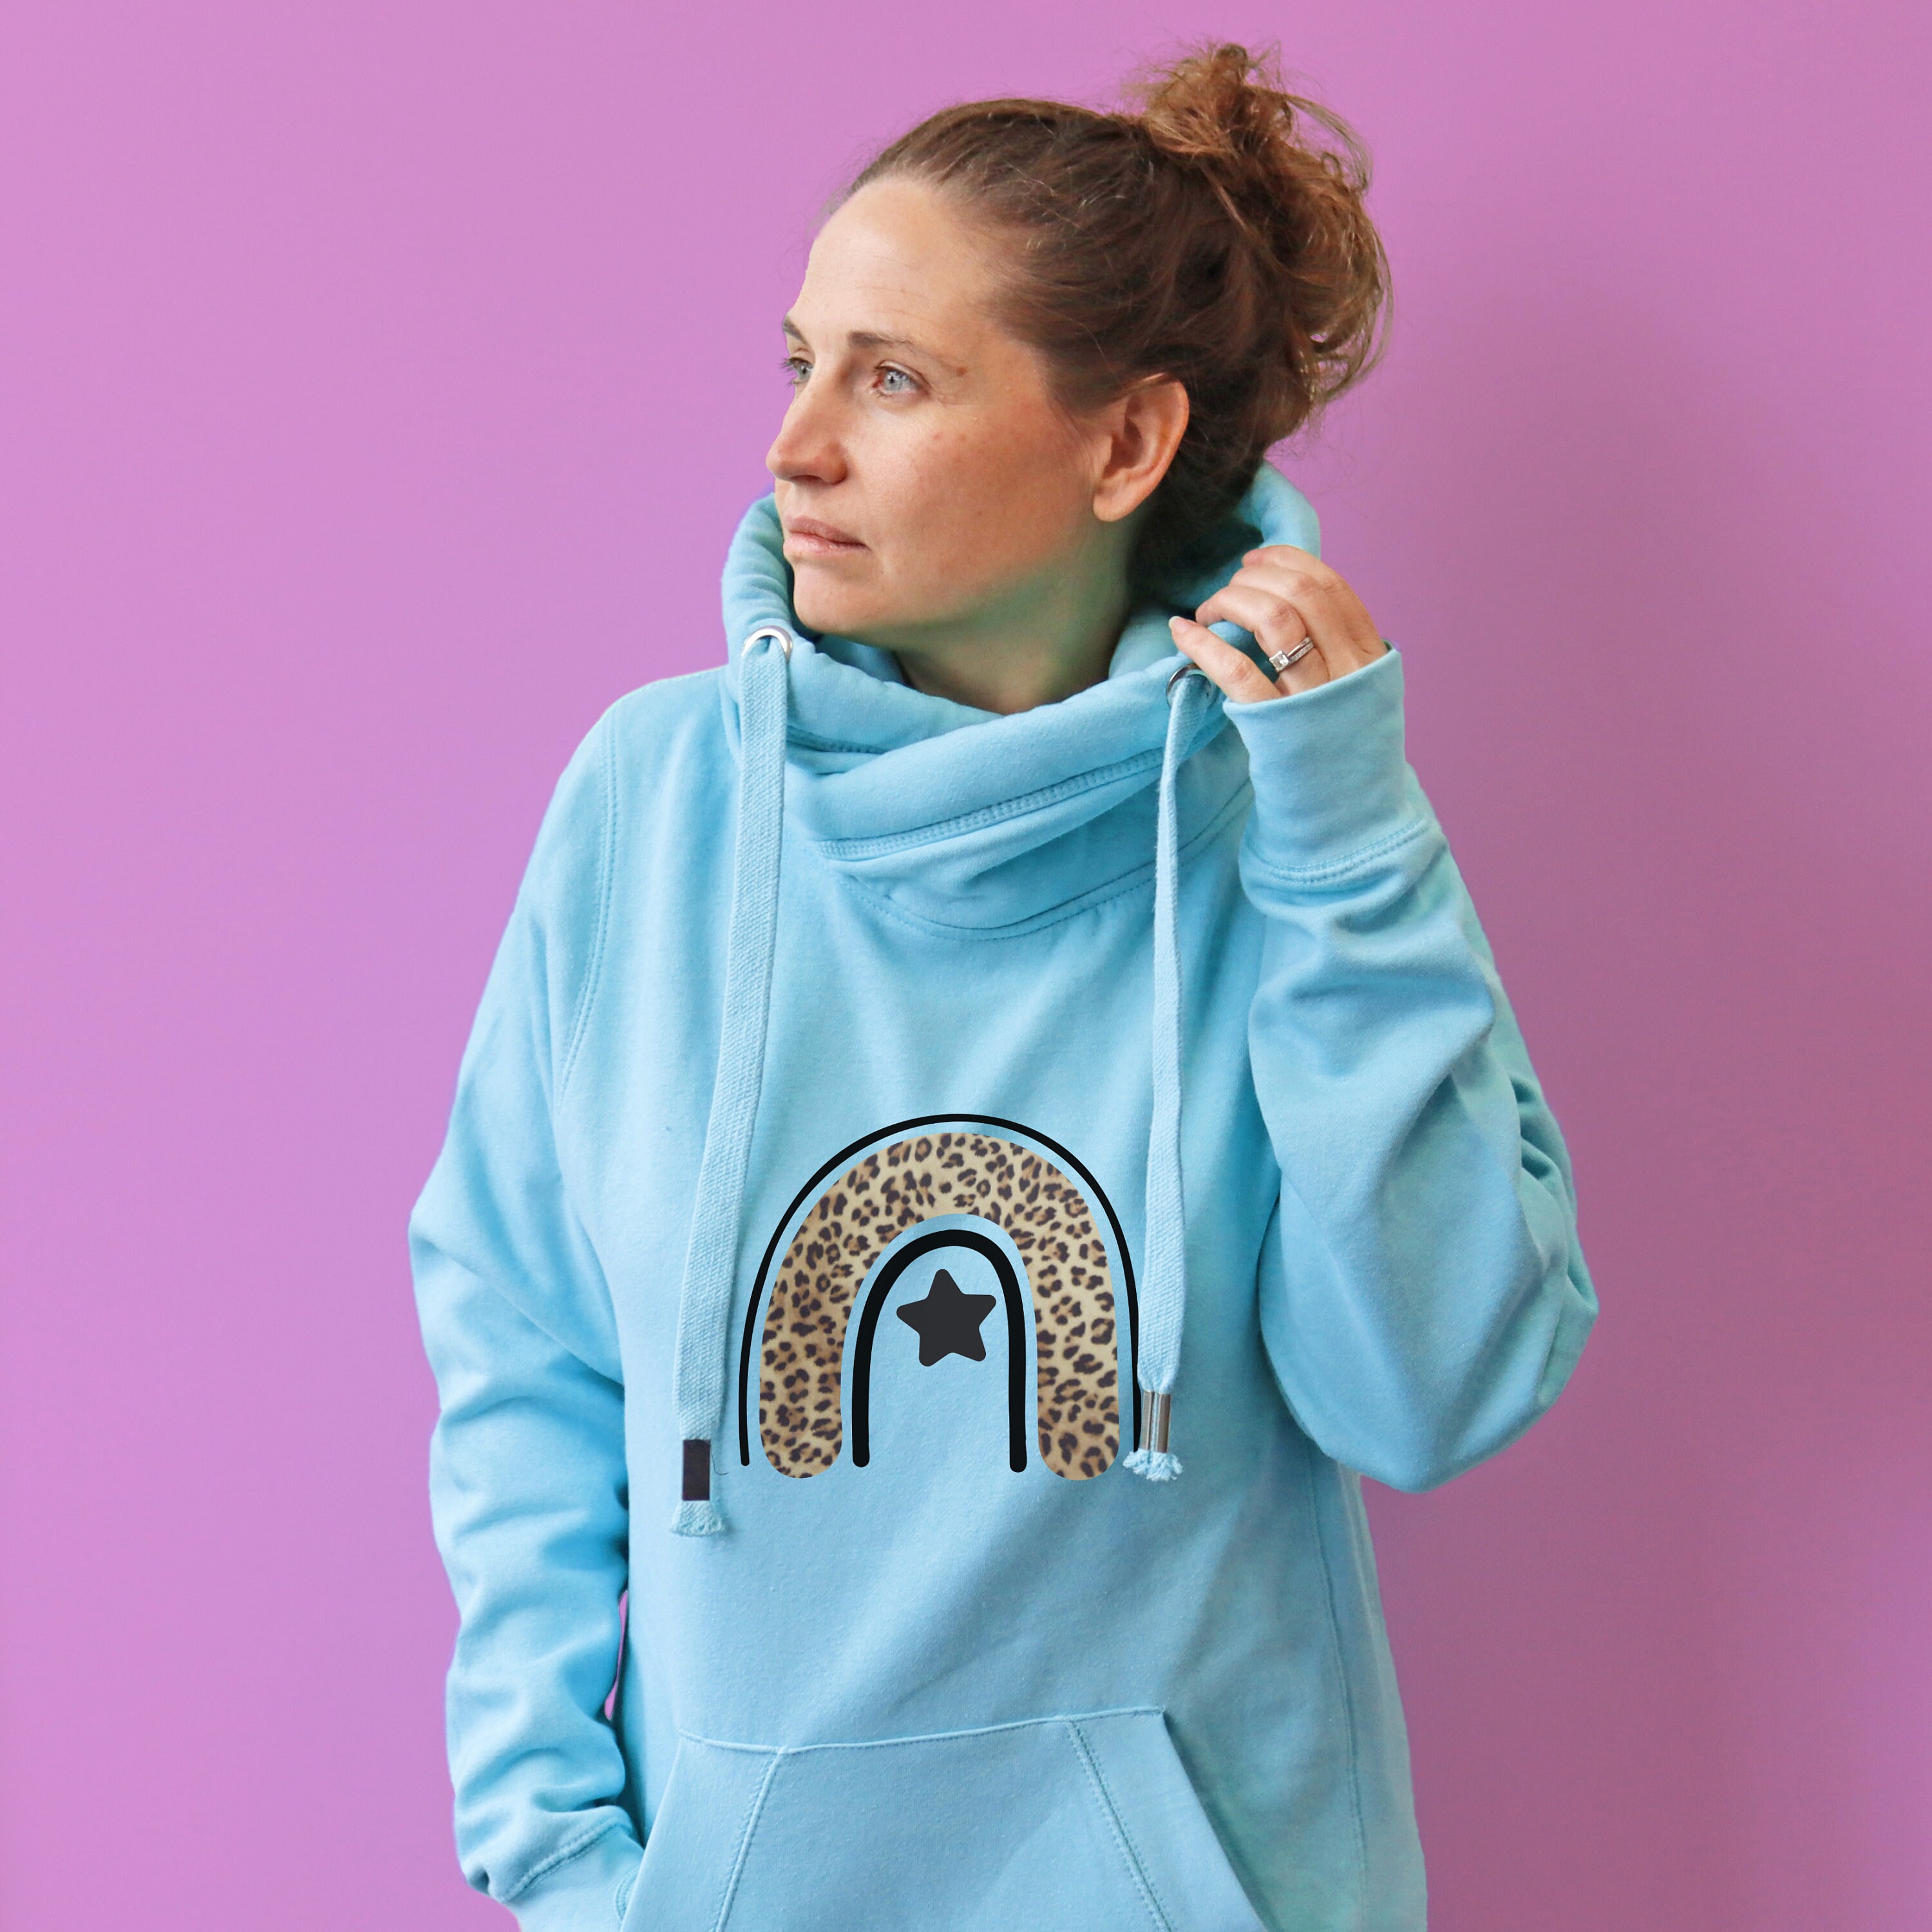 Cowl Neck Luxe Baby Blue Hoodie | Snuggly Blue Hoodie | Cowl Neck Chunky Hoodie | Tired Weekend Loungewear Hoodie | Leopard Print Design